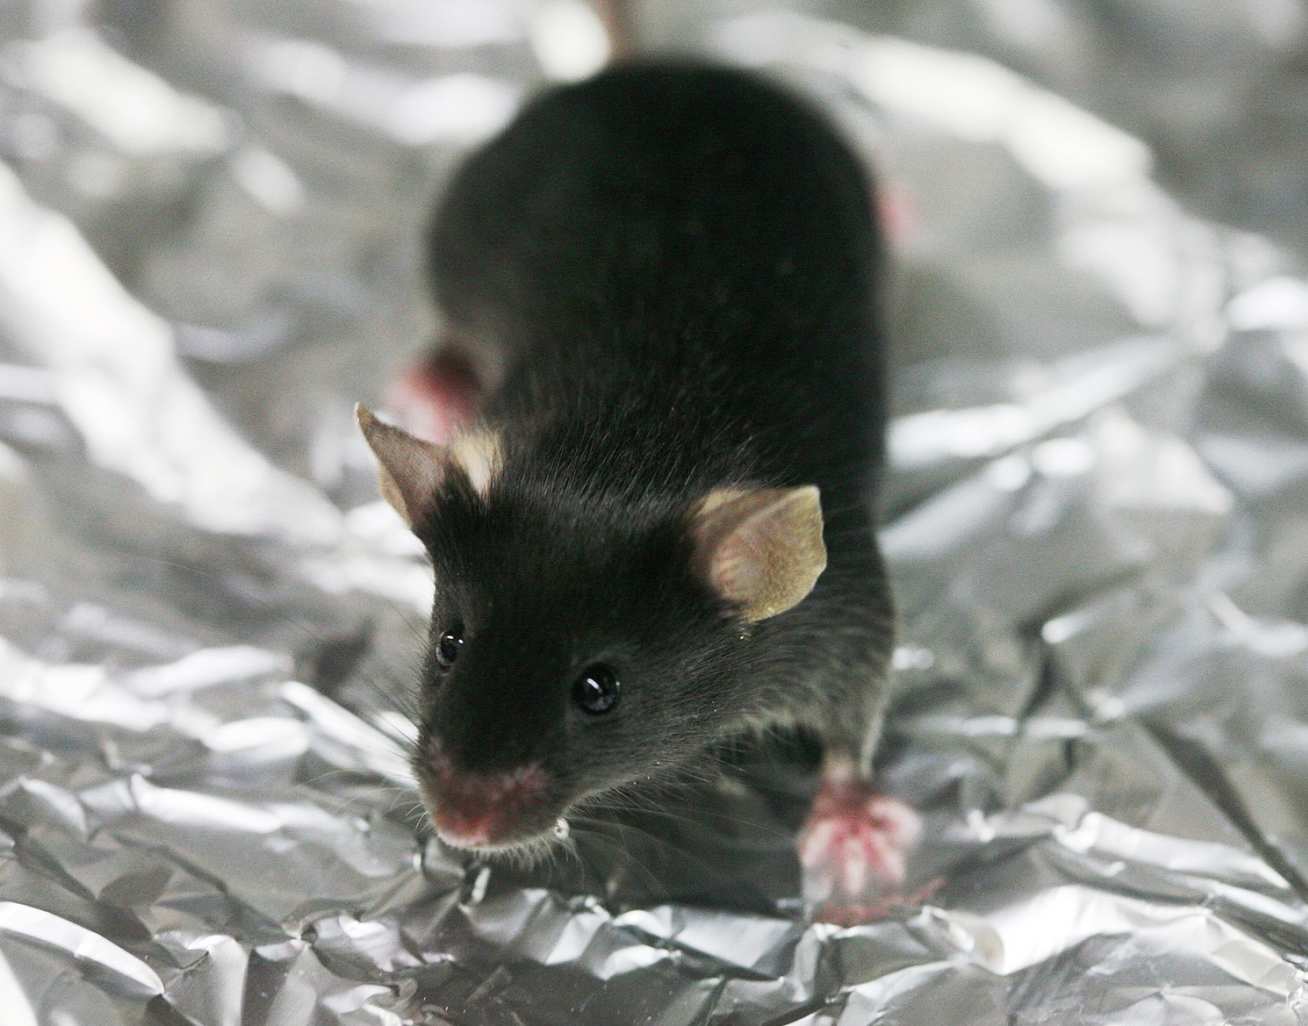 A black lab mouse